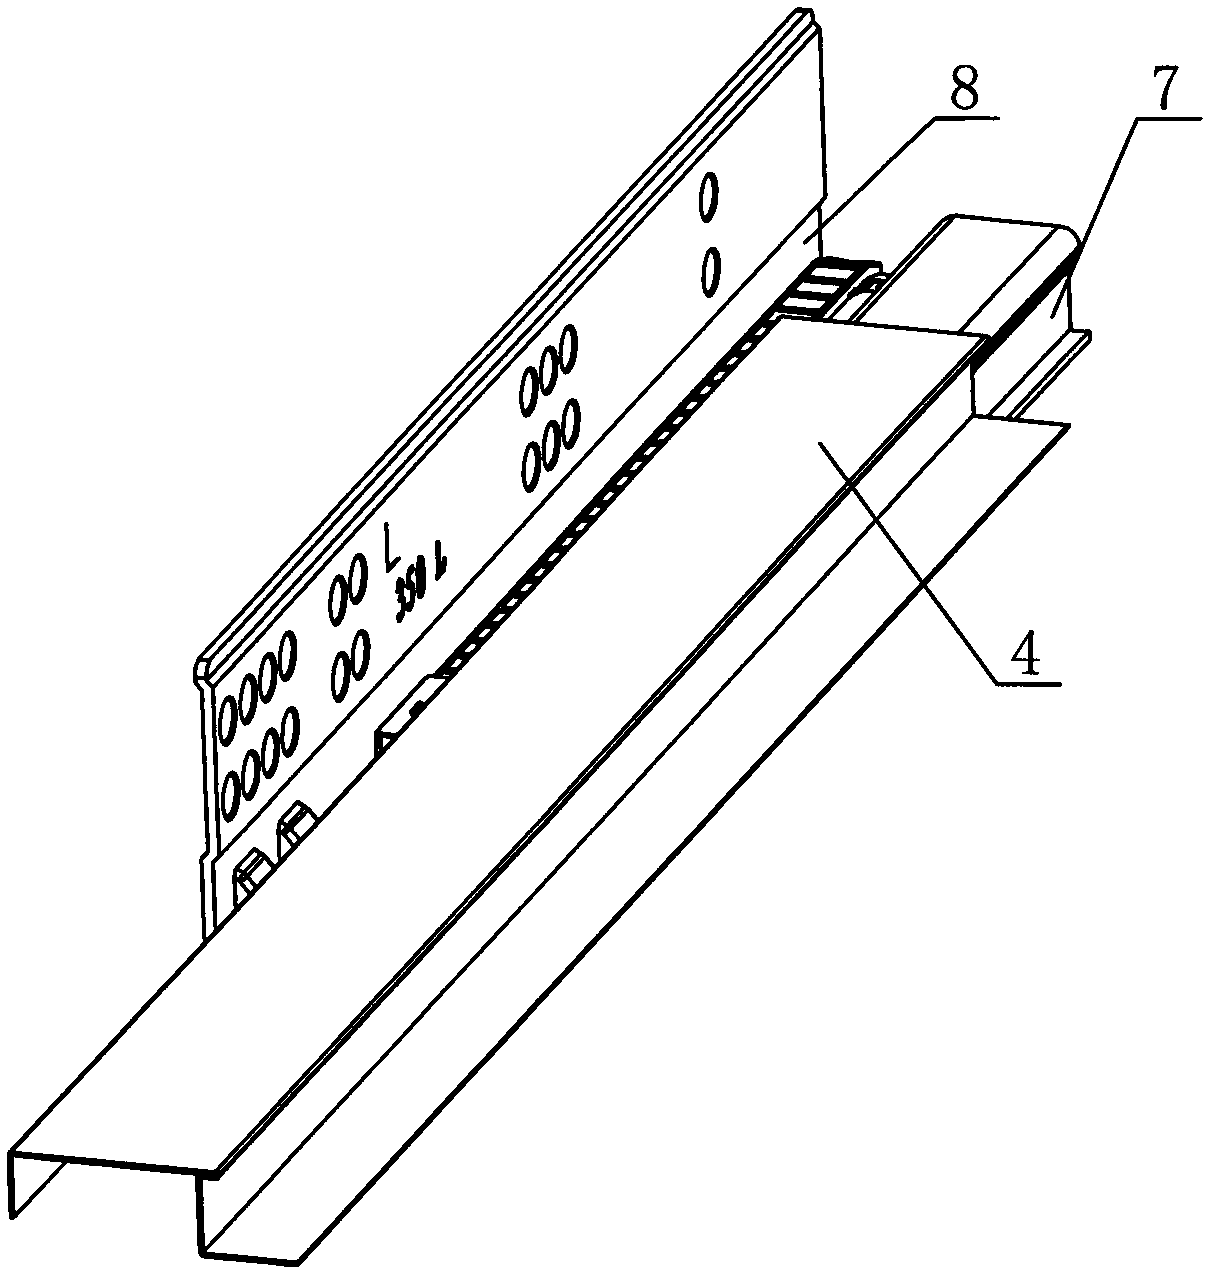 Drawer slide rail for furniture